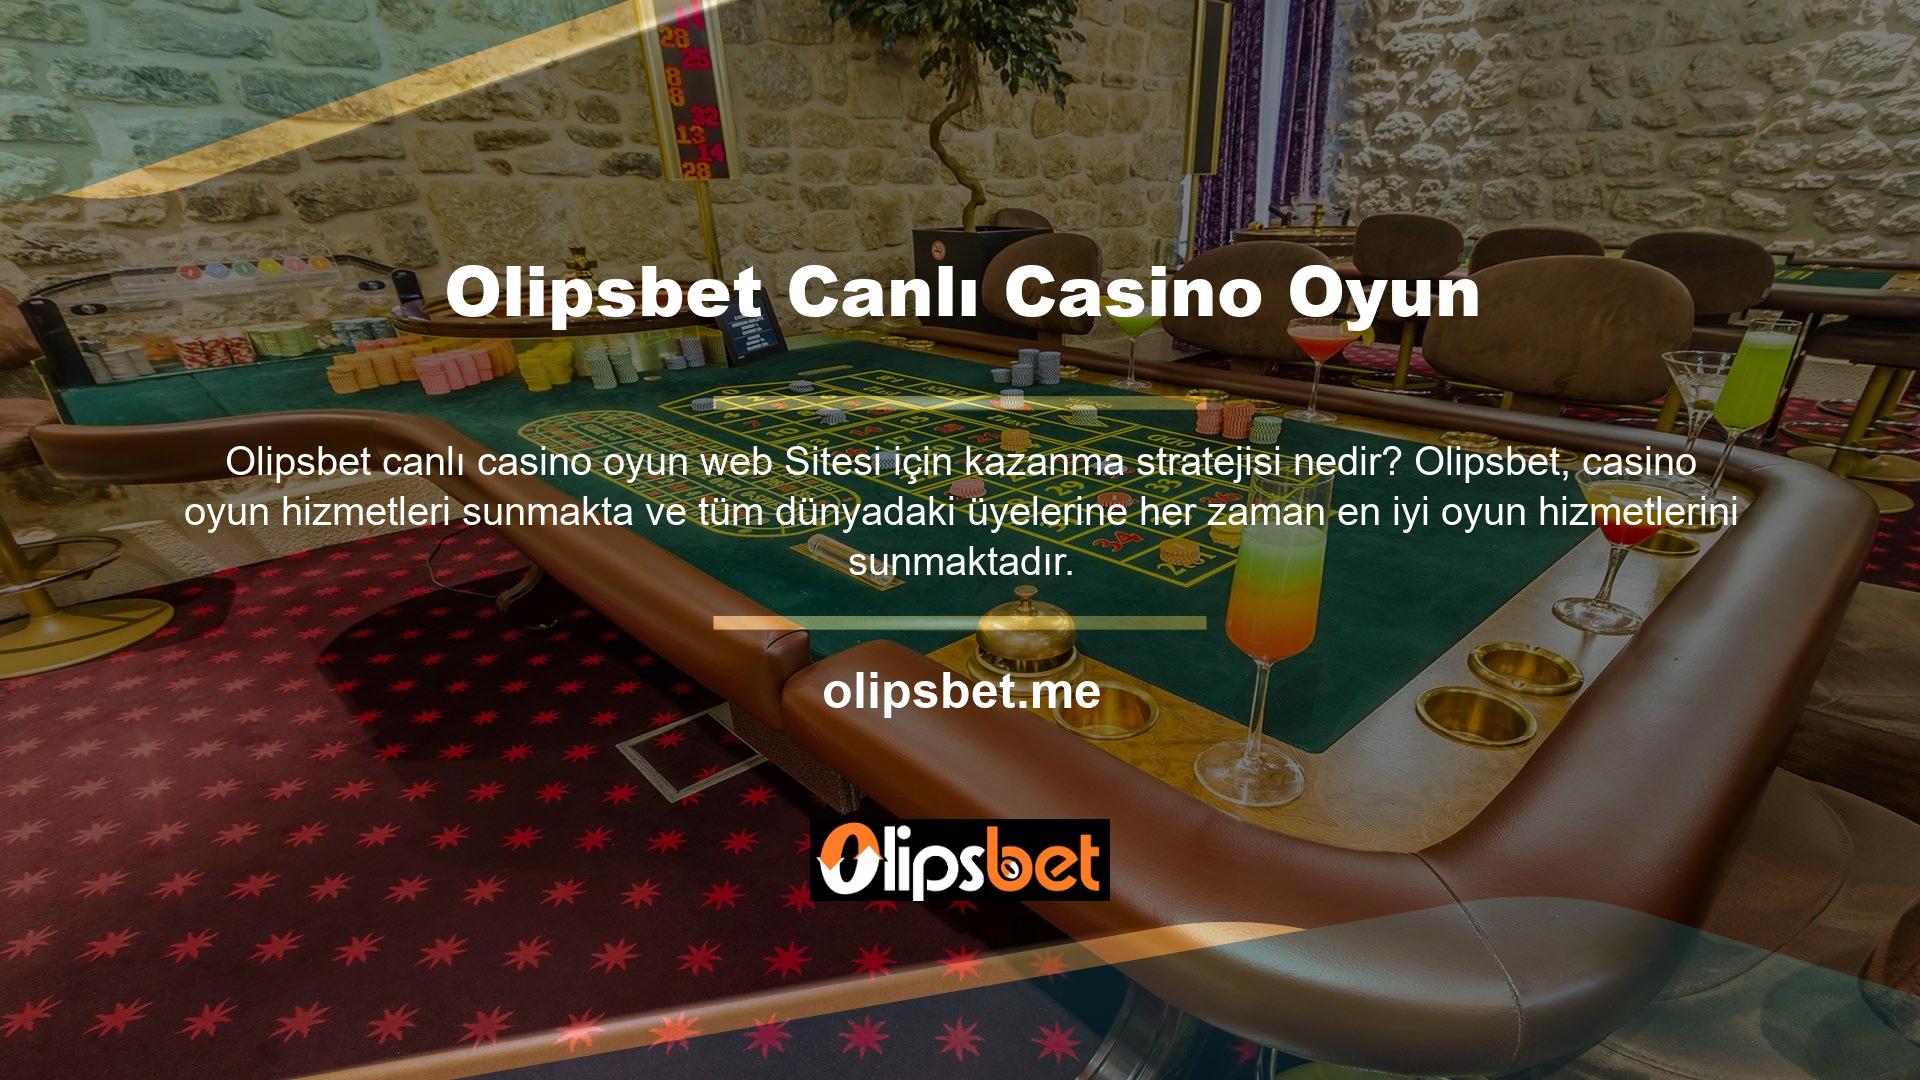 Tüm oyun hizmetleri Olipsbet Casino Games tarafından çevrimiçi kullanıcılar aracılığıyla sağlanmakta olup, Olipsbet üyelerinin casino oyunlarından kolaylıkla keyif almasına olanak sağlanmaktadır